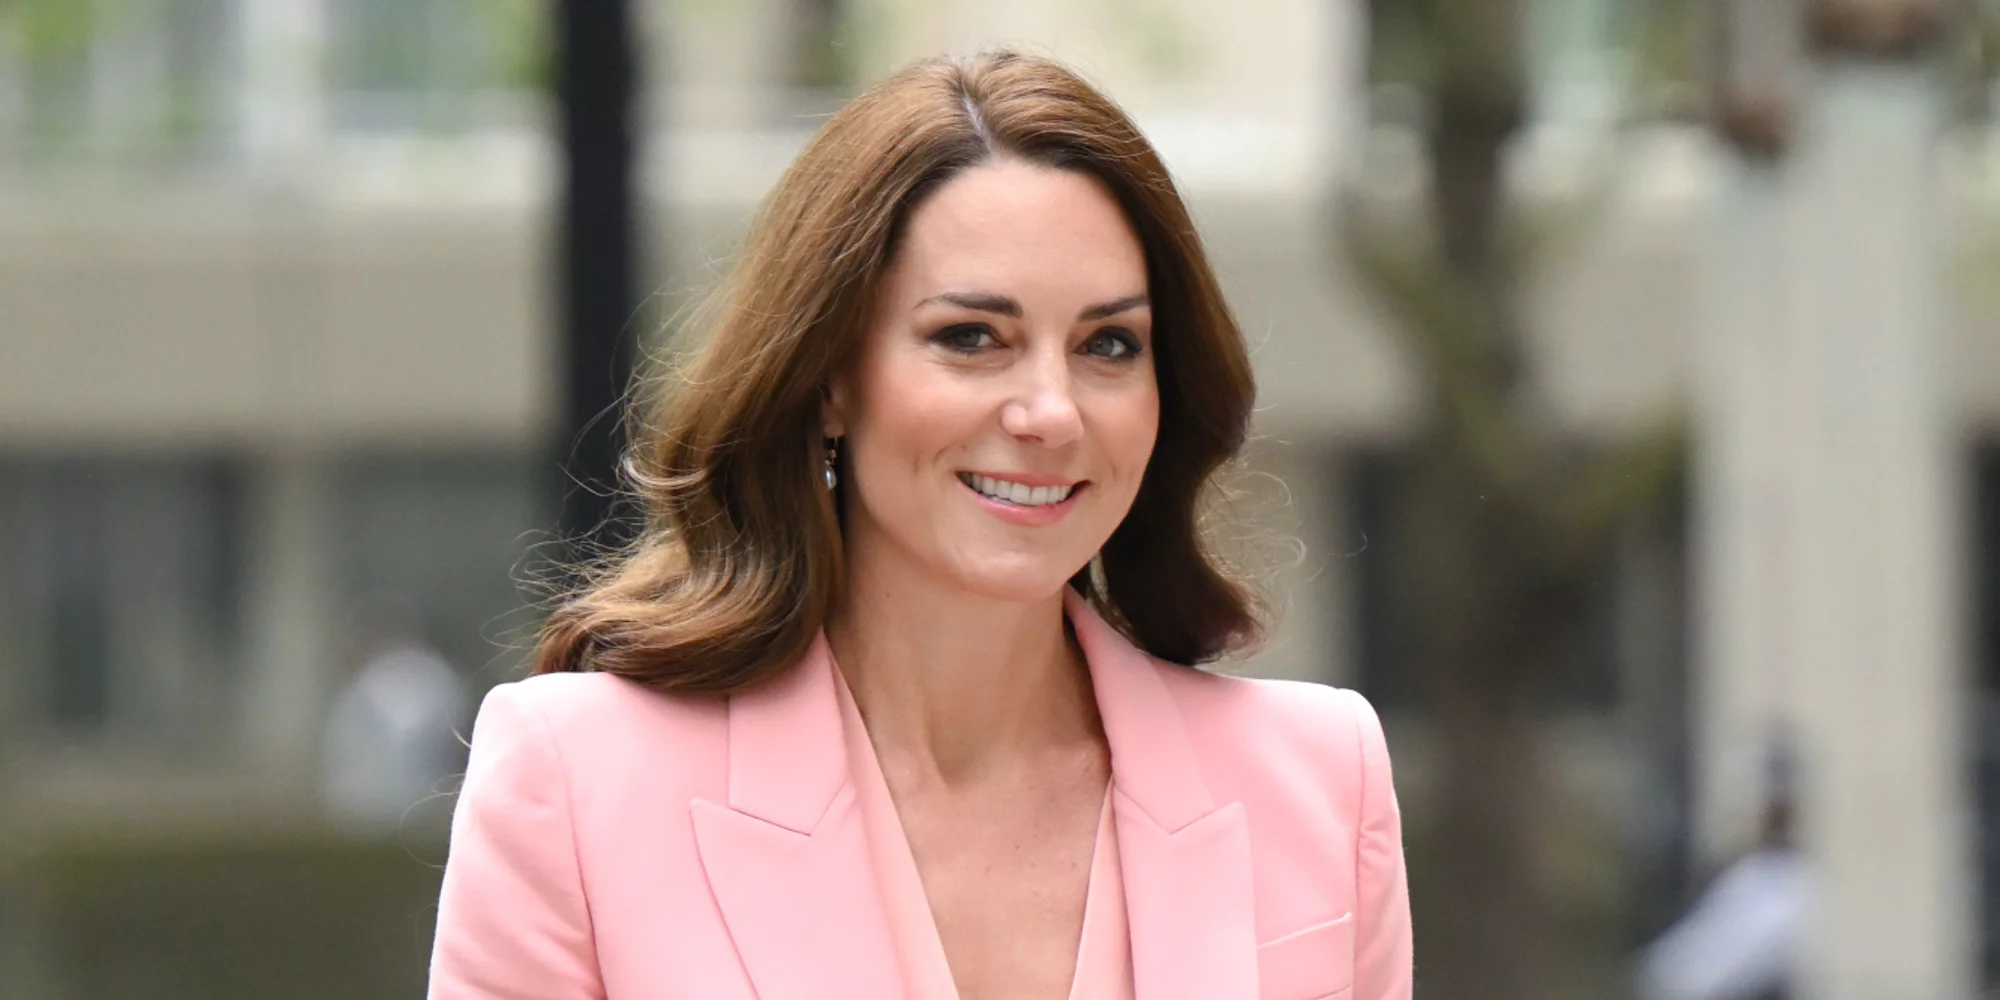 De nouvelles photos et une vidéo de Kate Middleton en compagnie du prince William sont dévoilées par des médias tabloïds.